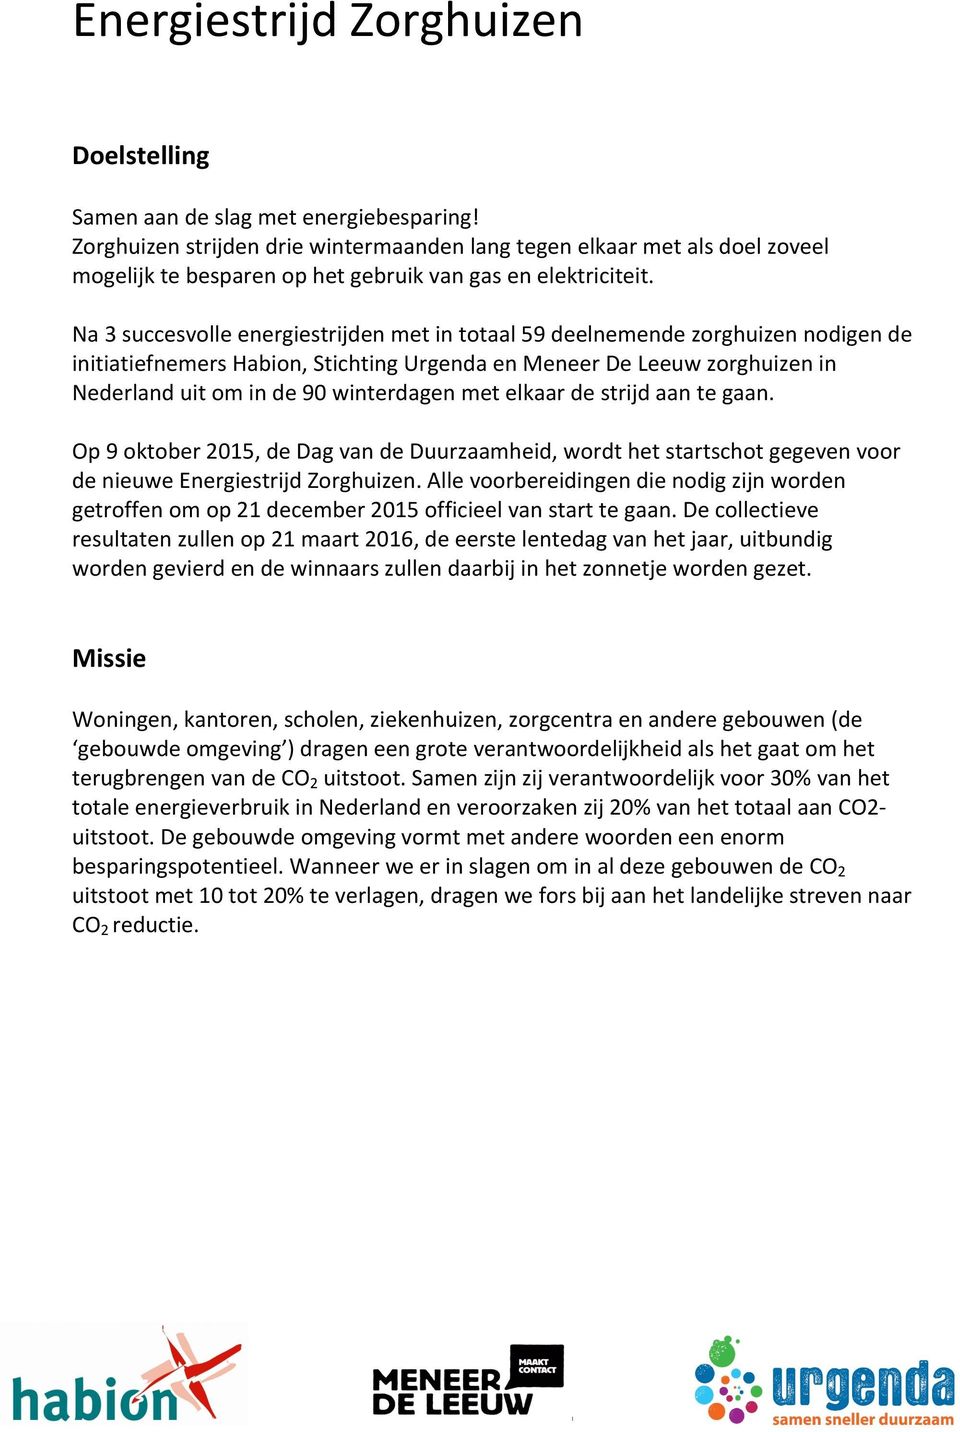 Na 3 succesvolle energiestrijden met in totaal 59 deelnemende zorghuizen nodigen de initiatiefnemers Habion, Stichting Urgenda en Meneer De Leeuw zorghuizen in Nederland uit om in de 90 winterdagen